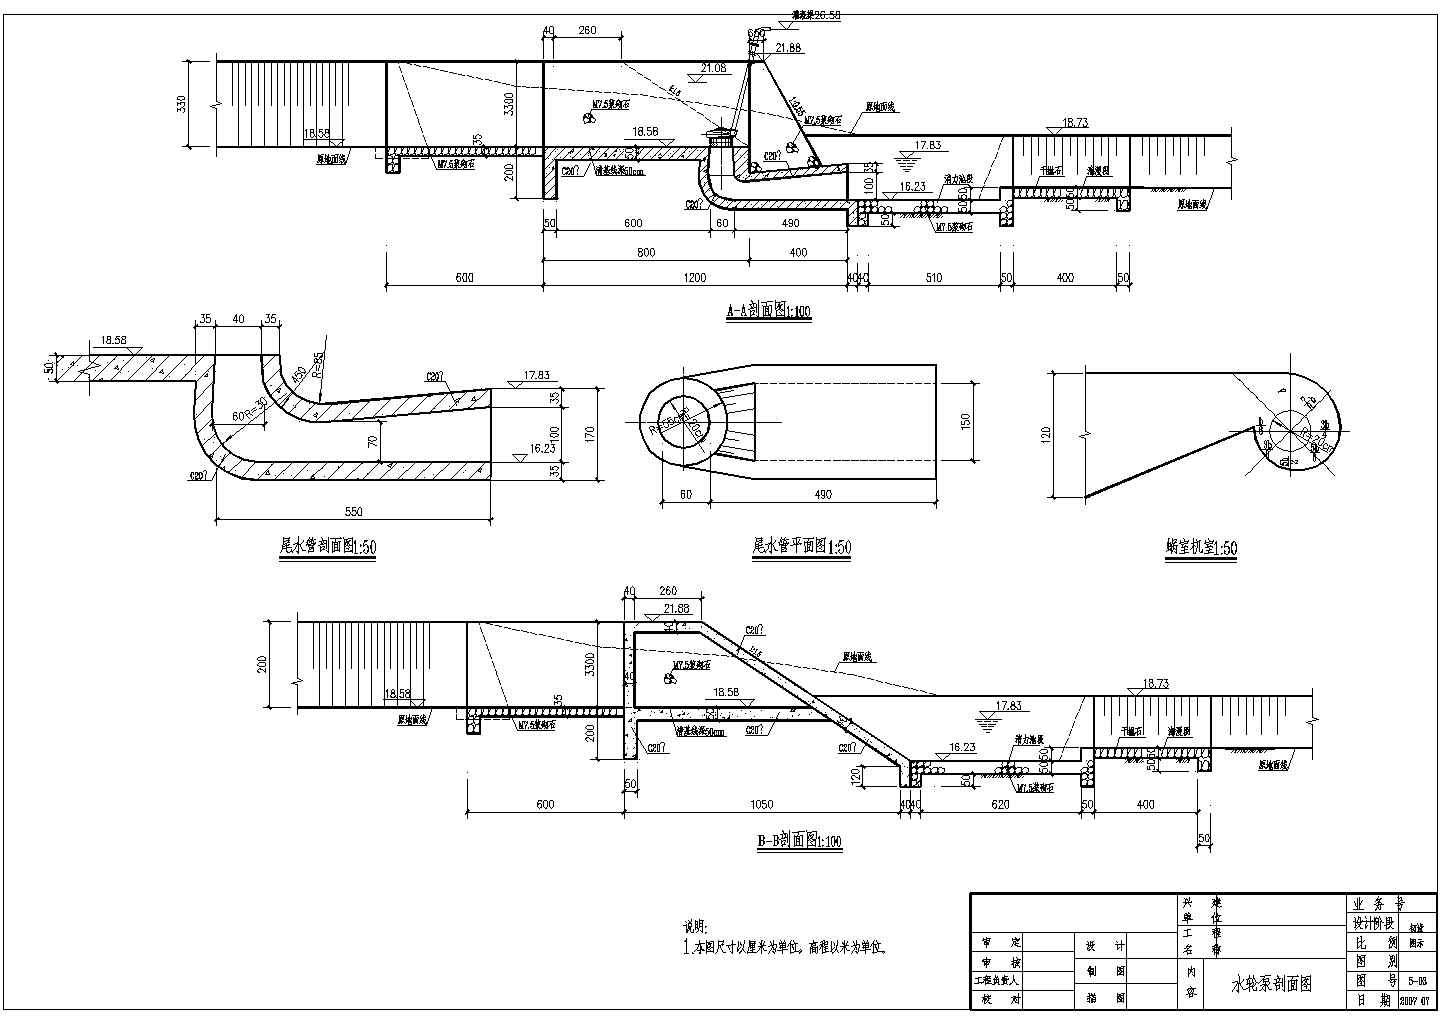 初步设计阶段某水轮泵全套结构布置图